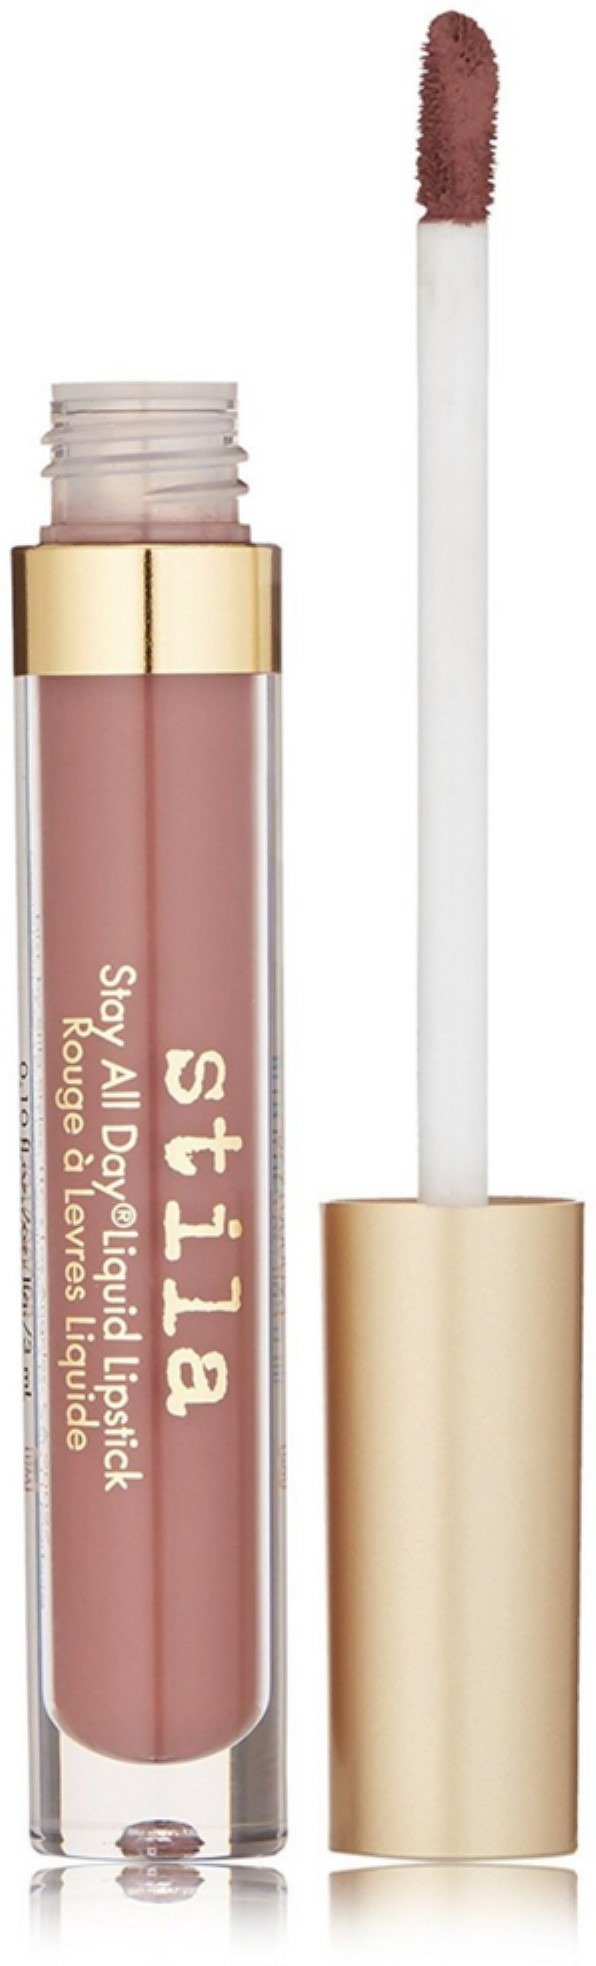 Stay All Day Liquid Lipstick - Perla 0.1 oz Lipstick